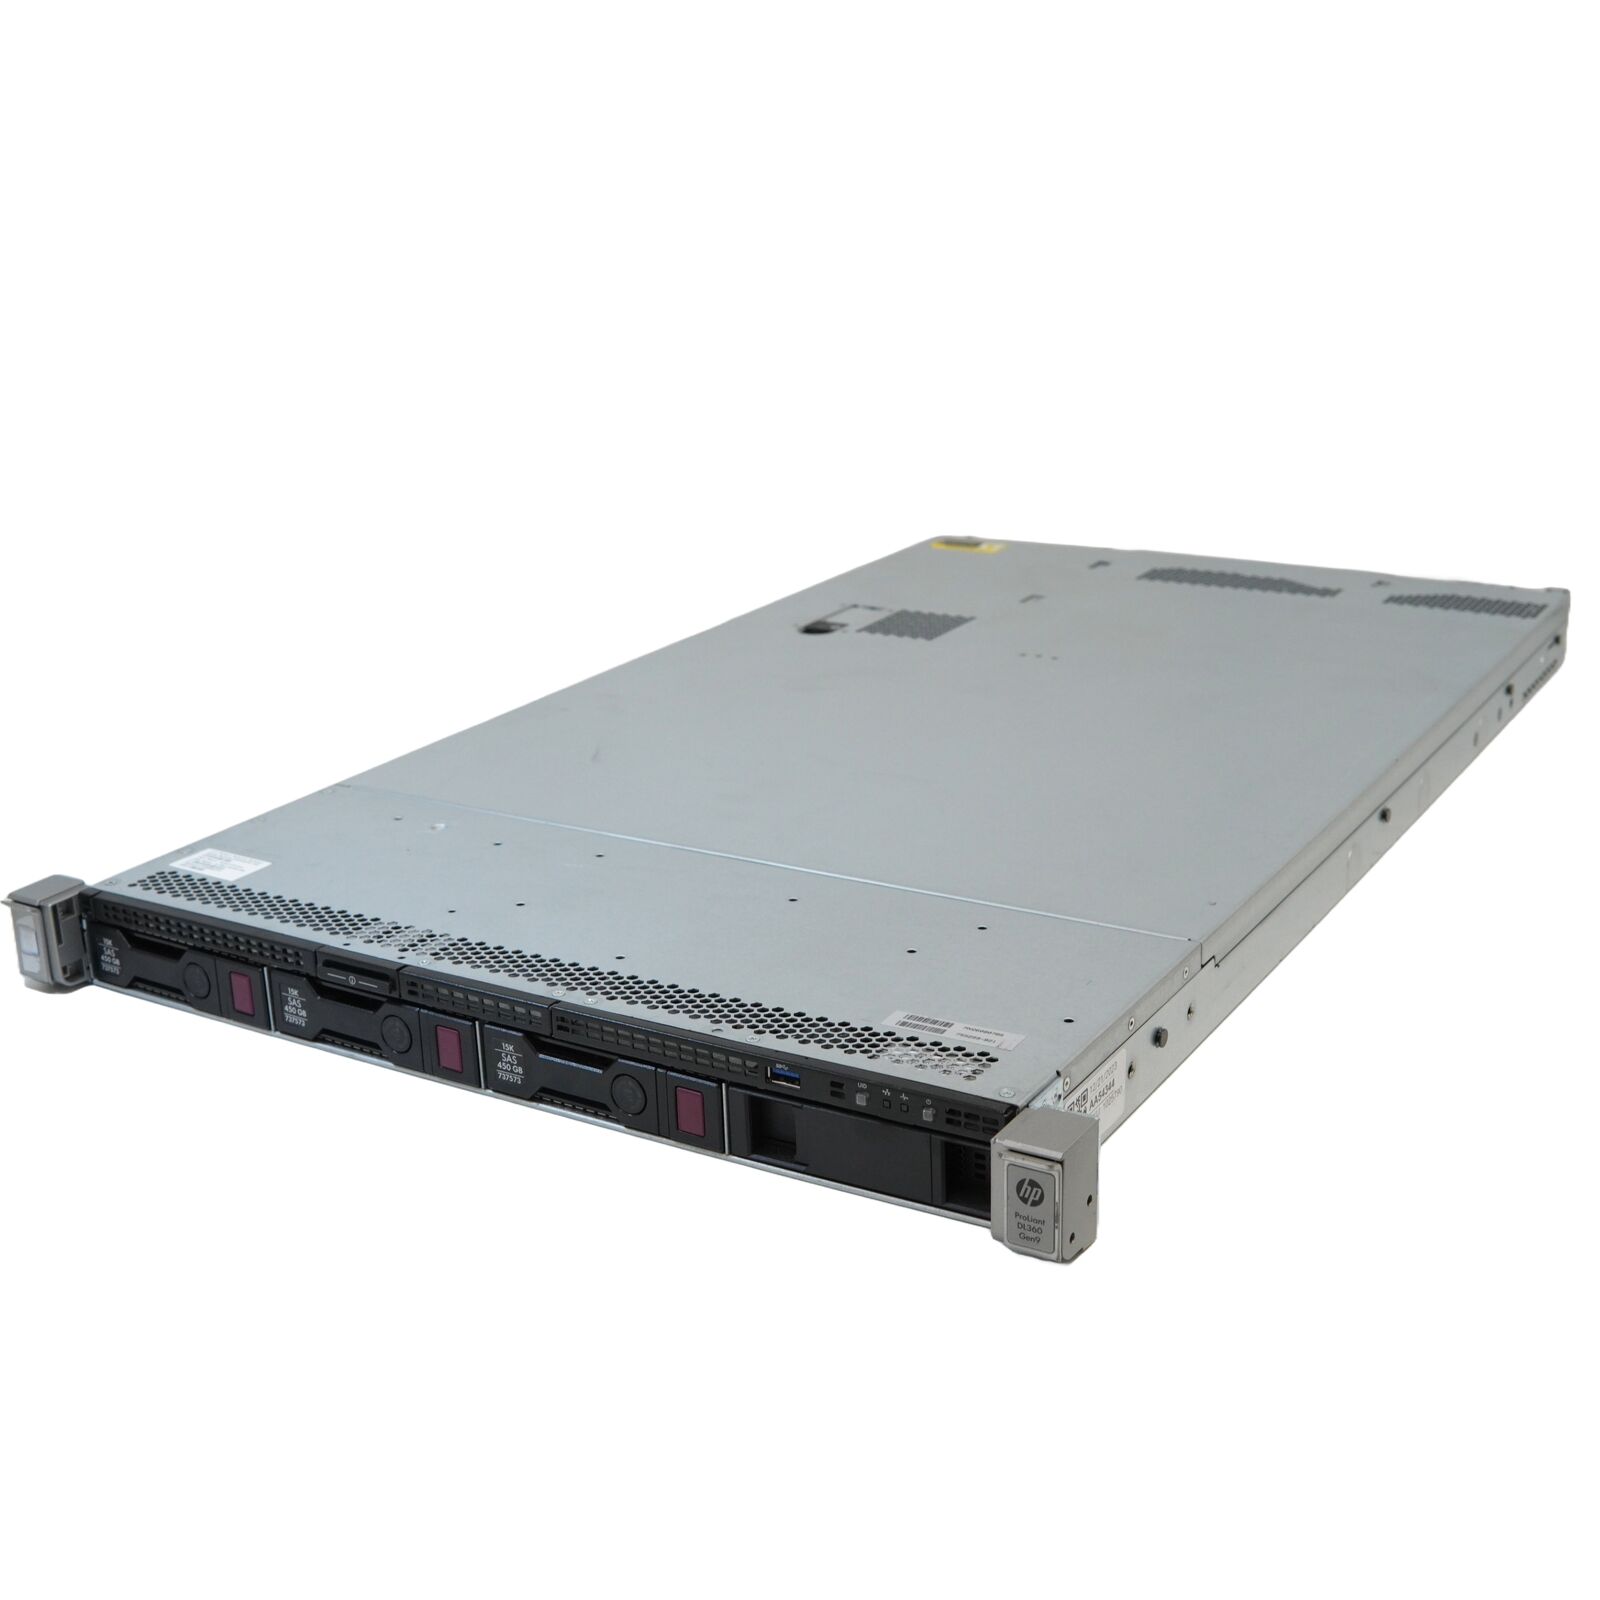 HP DL360 Gen9 1U Server - 1x e5-2623v3 4c/8t 3GHz, 64GB (8x8) RAM, p440ar